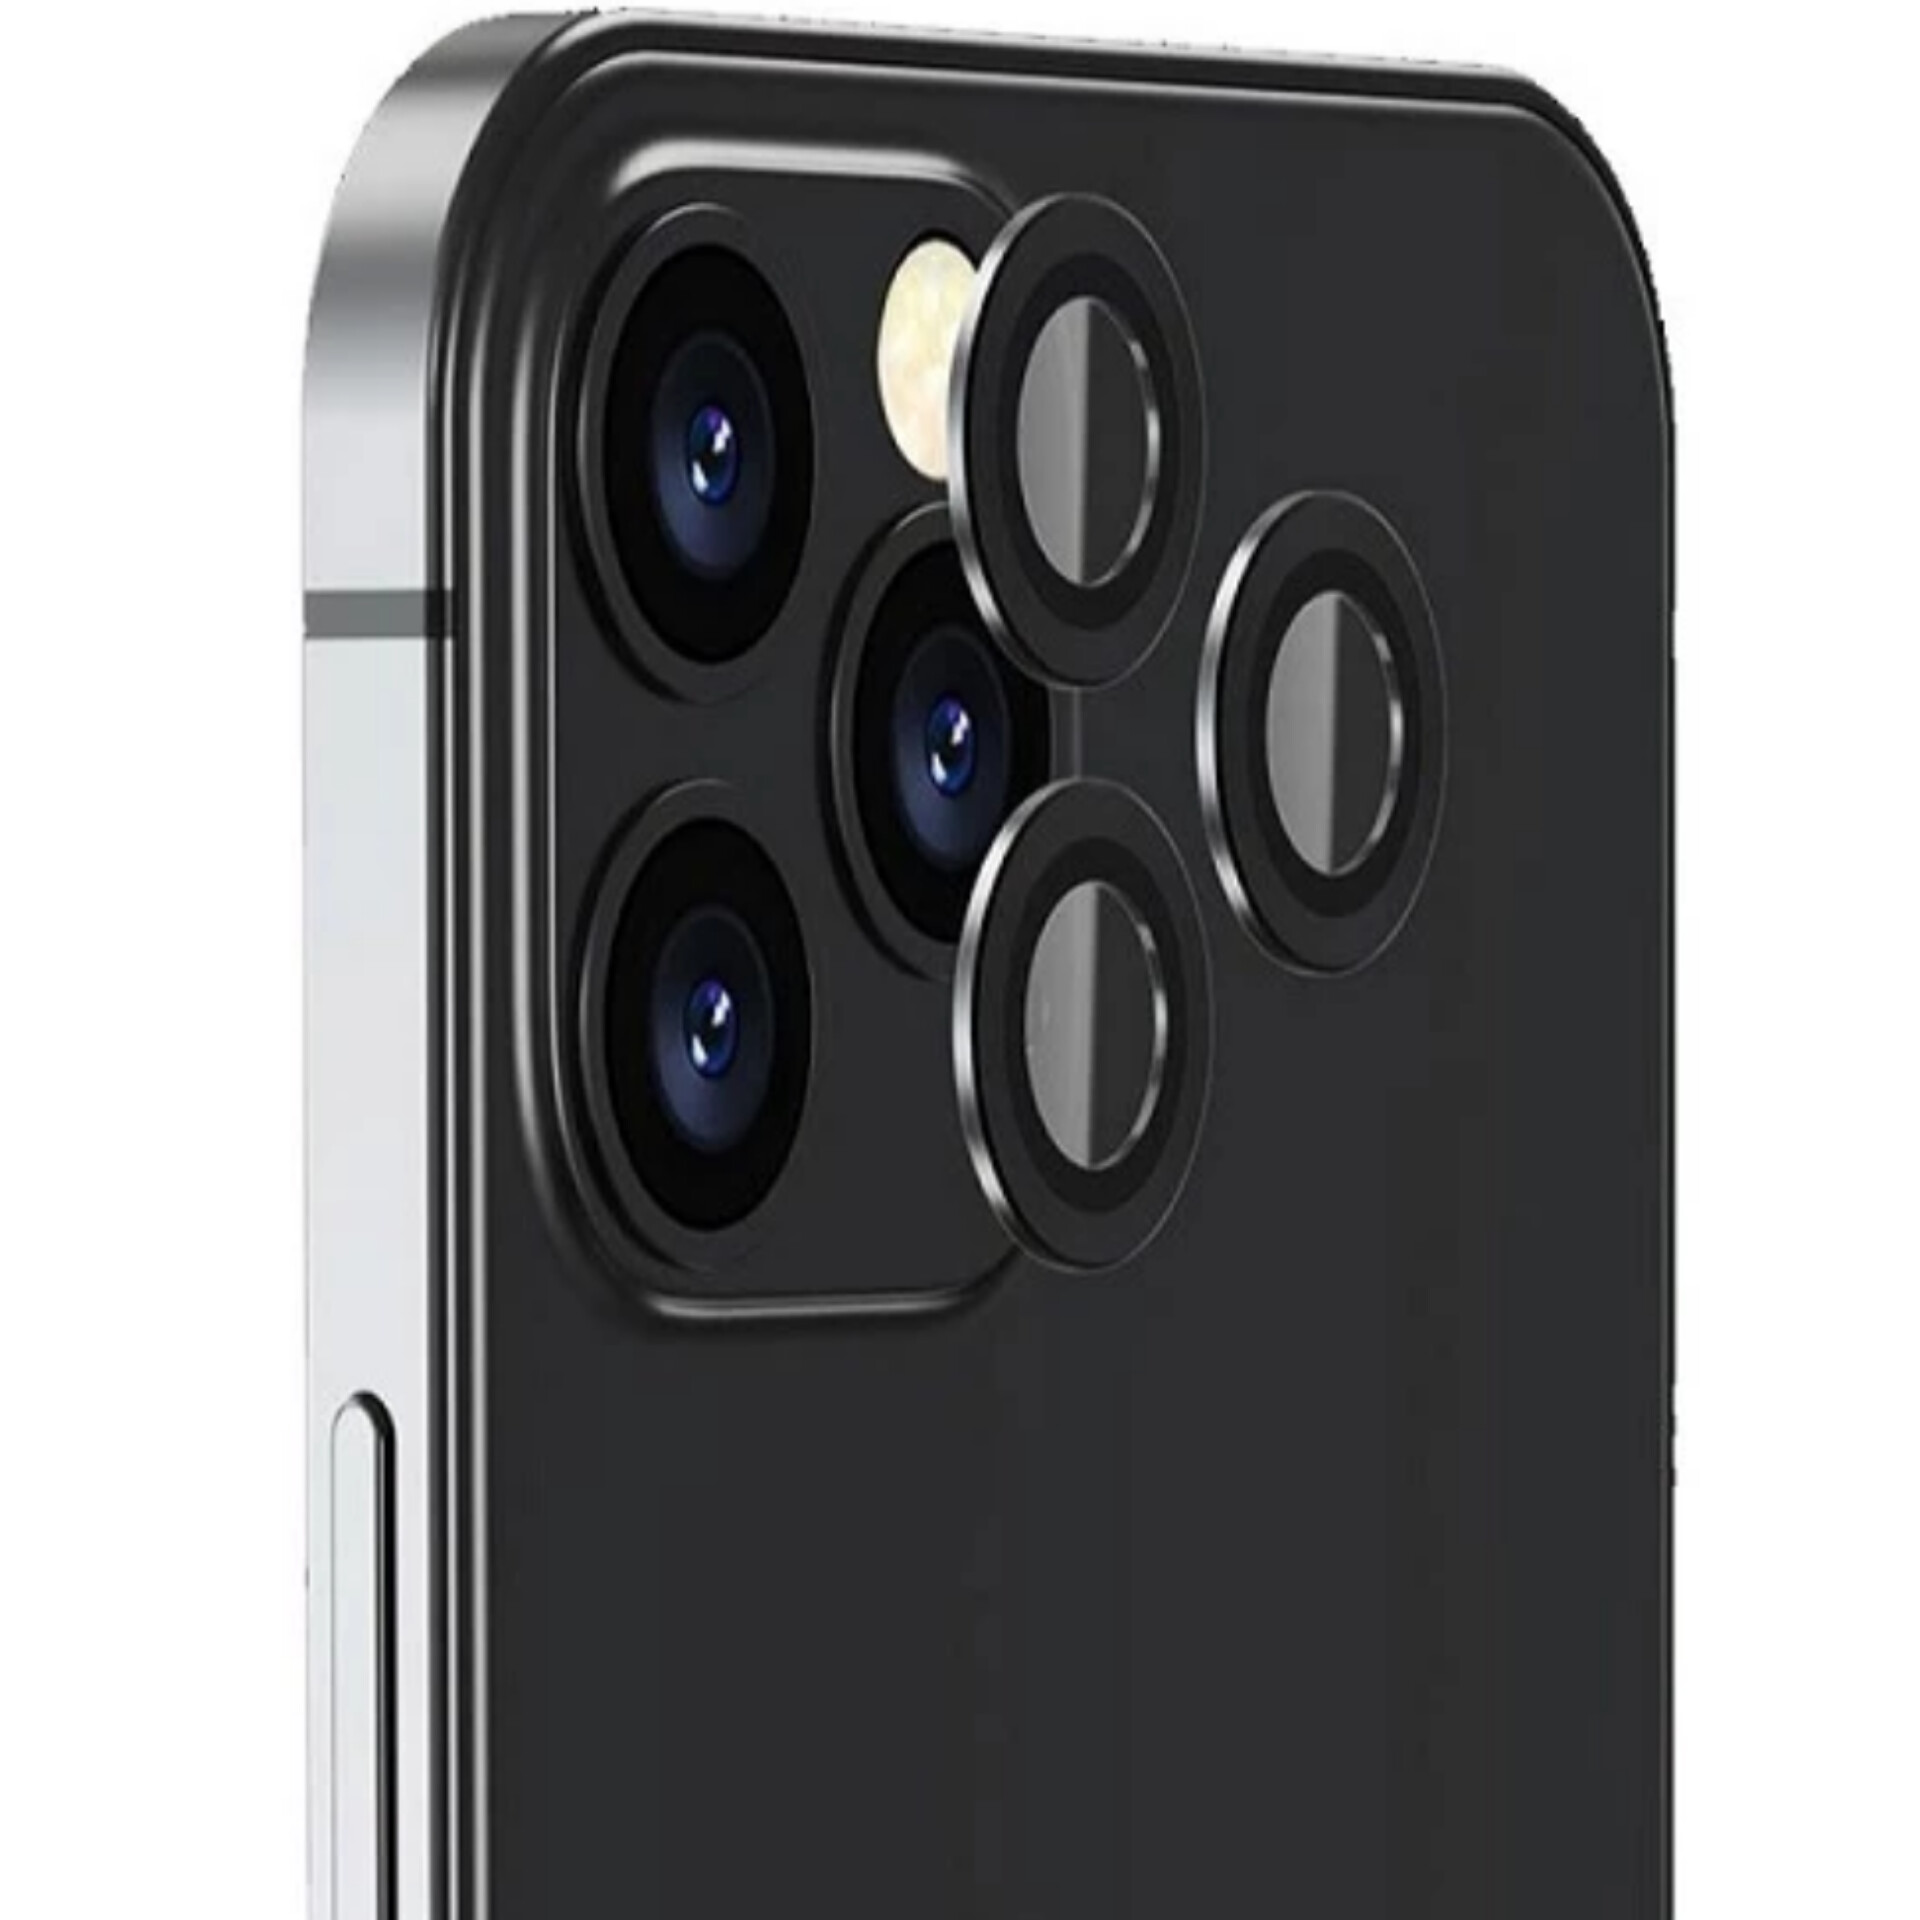 محافظ لنز دوربین مدل رینگی 9H مناسب برای گوشی موبایل اپل Iphone 12 / 12Pro / 12pro Max / 12mini / 11 / 11Pro / 11Pro Max